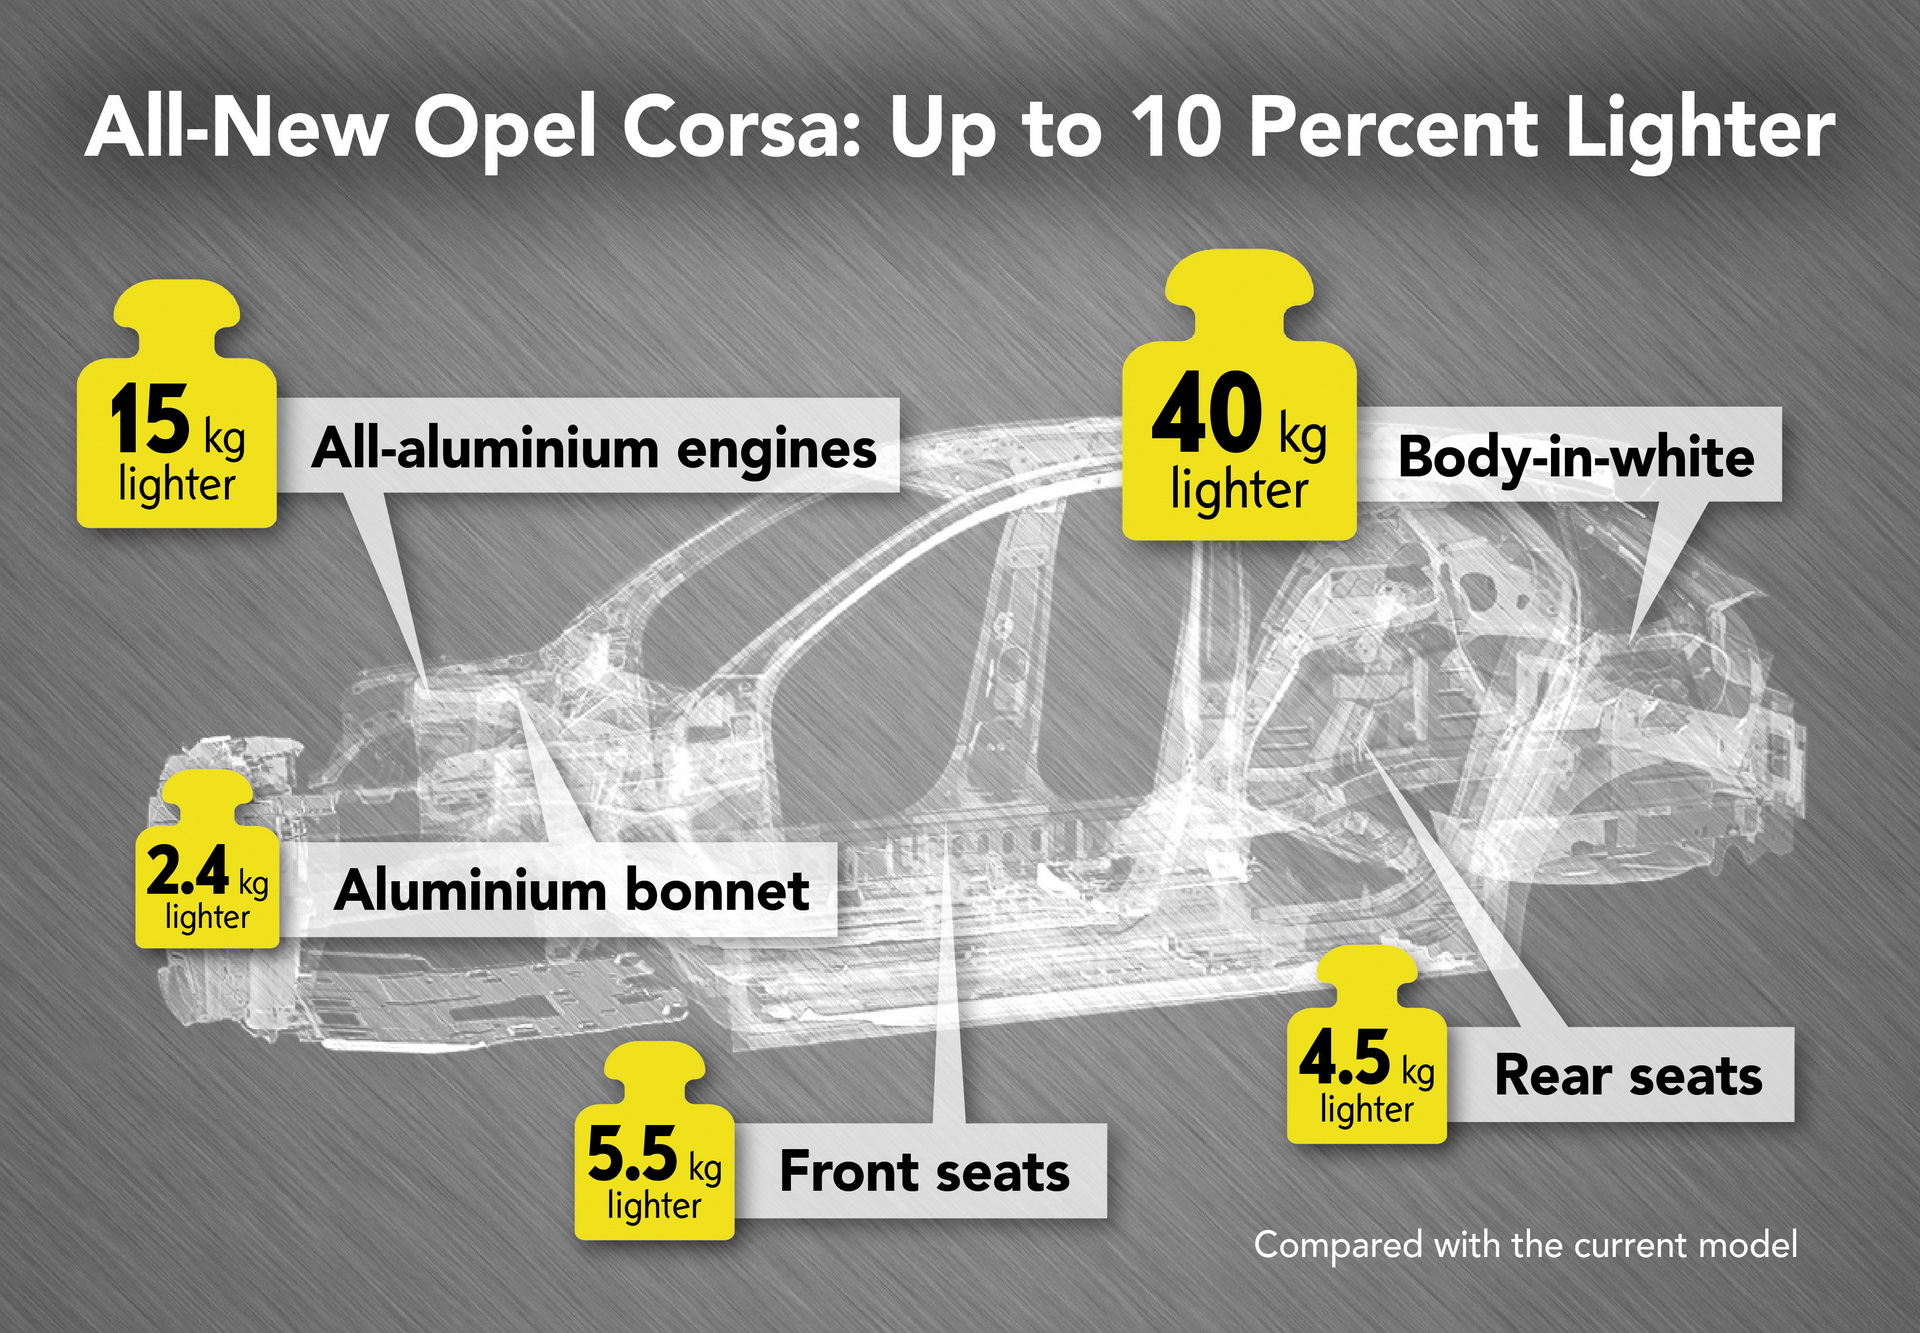 Yeni Opel Corsa, selefine kıyasla yüzde 10 hafifleyecek